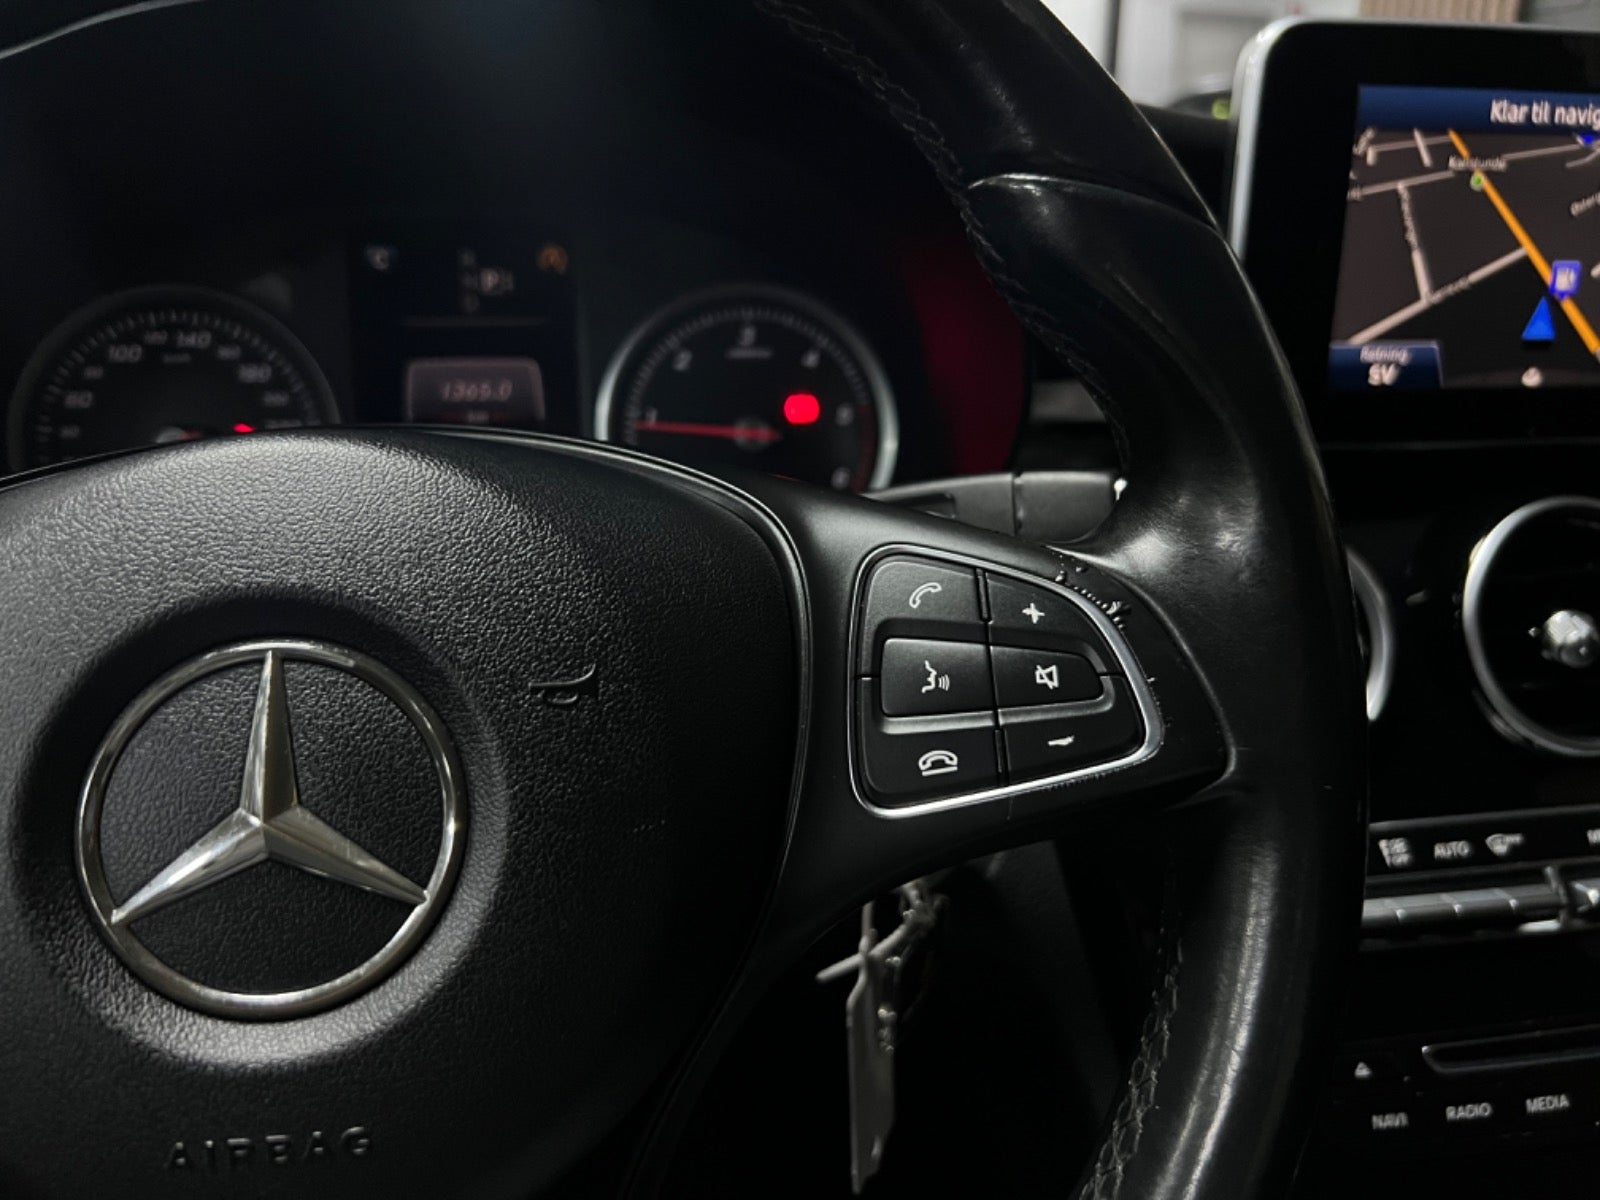 Mercedes C180 2015